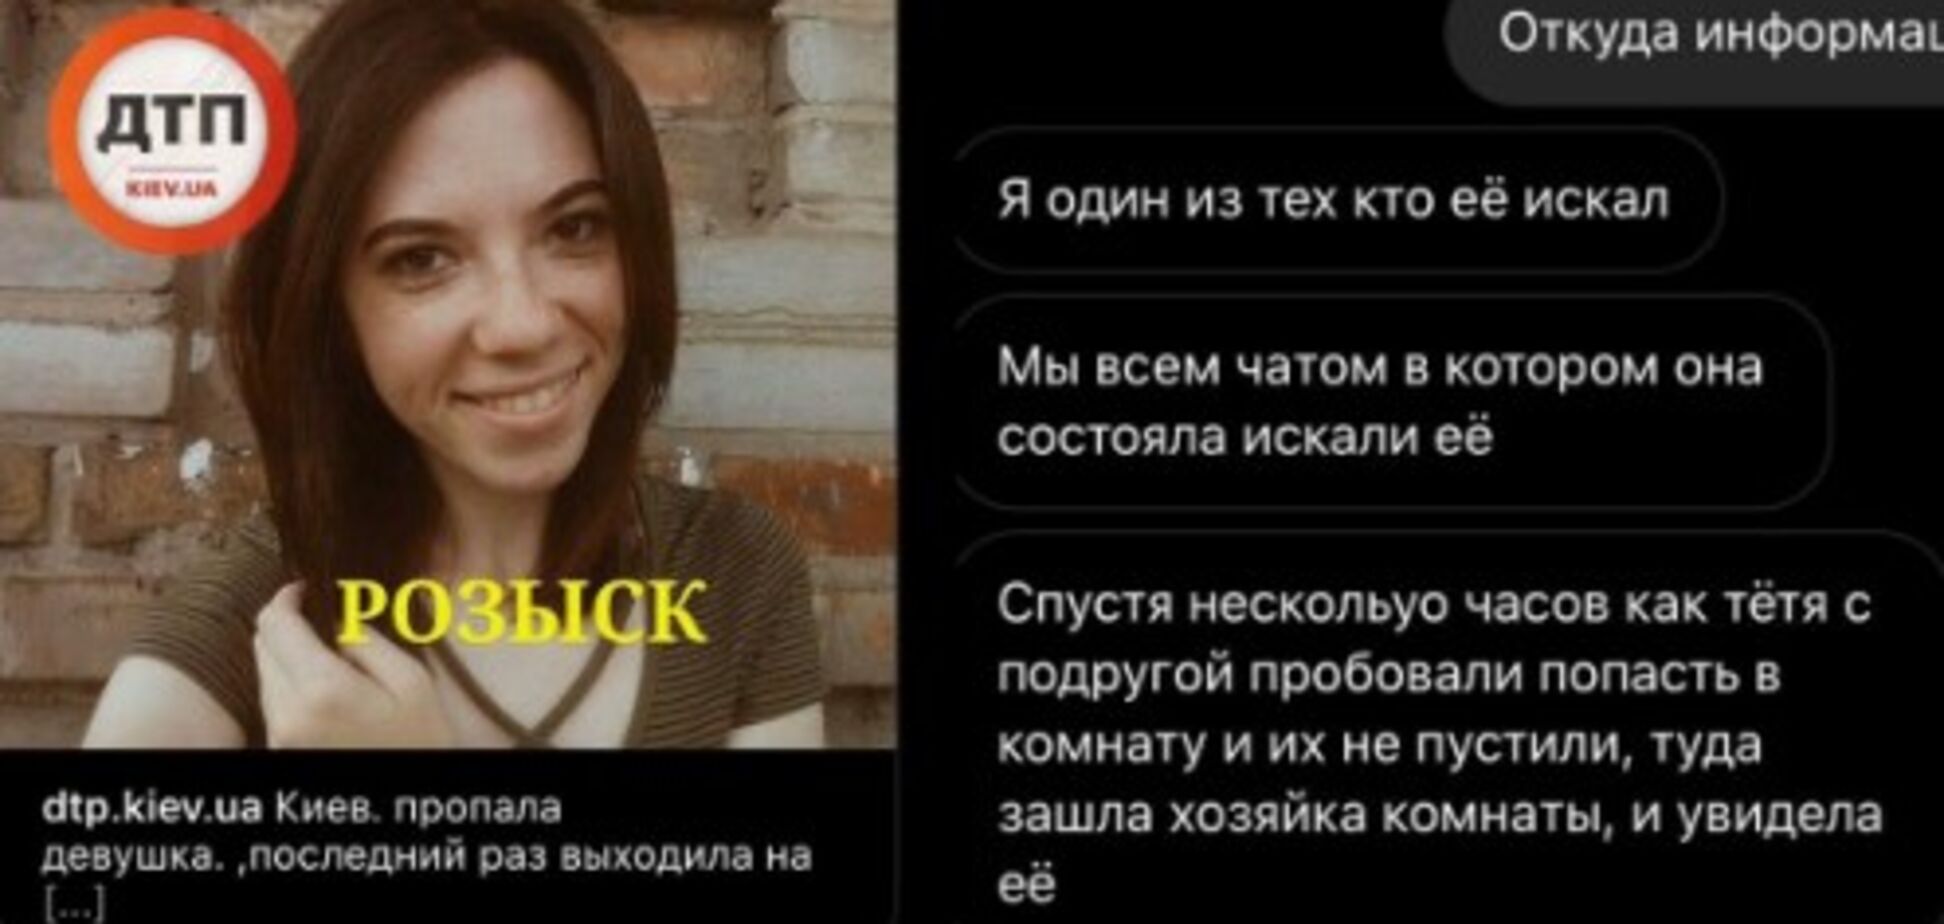 В Киеве пропавшую девушку нашли мертвой в съемной квартире. Фото